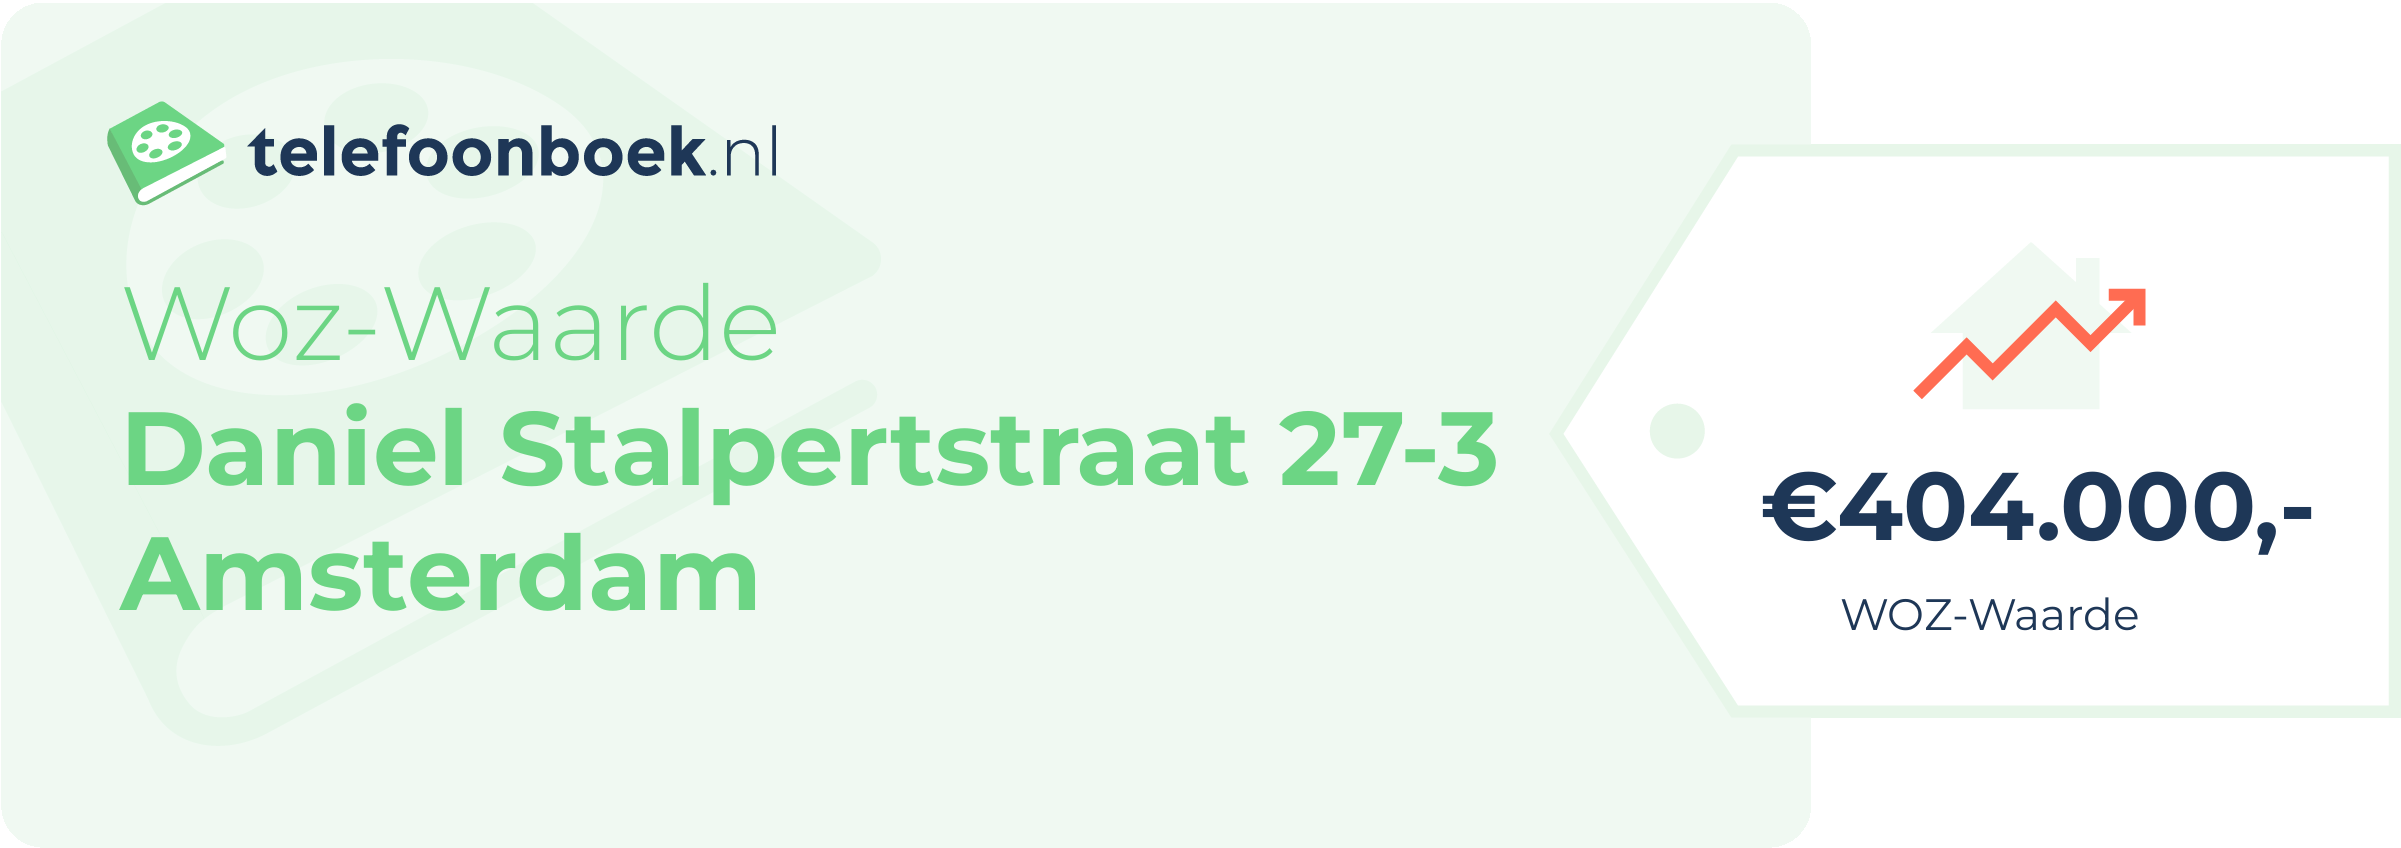 WOZ-waarde Daniel Stalpertstraat 27-3 Amsterdam